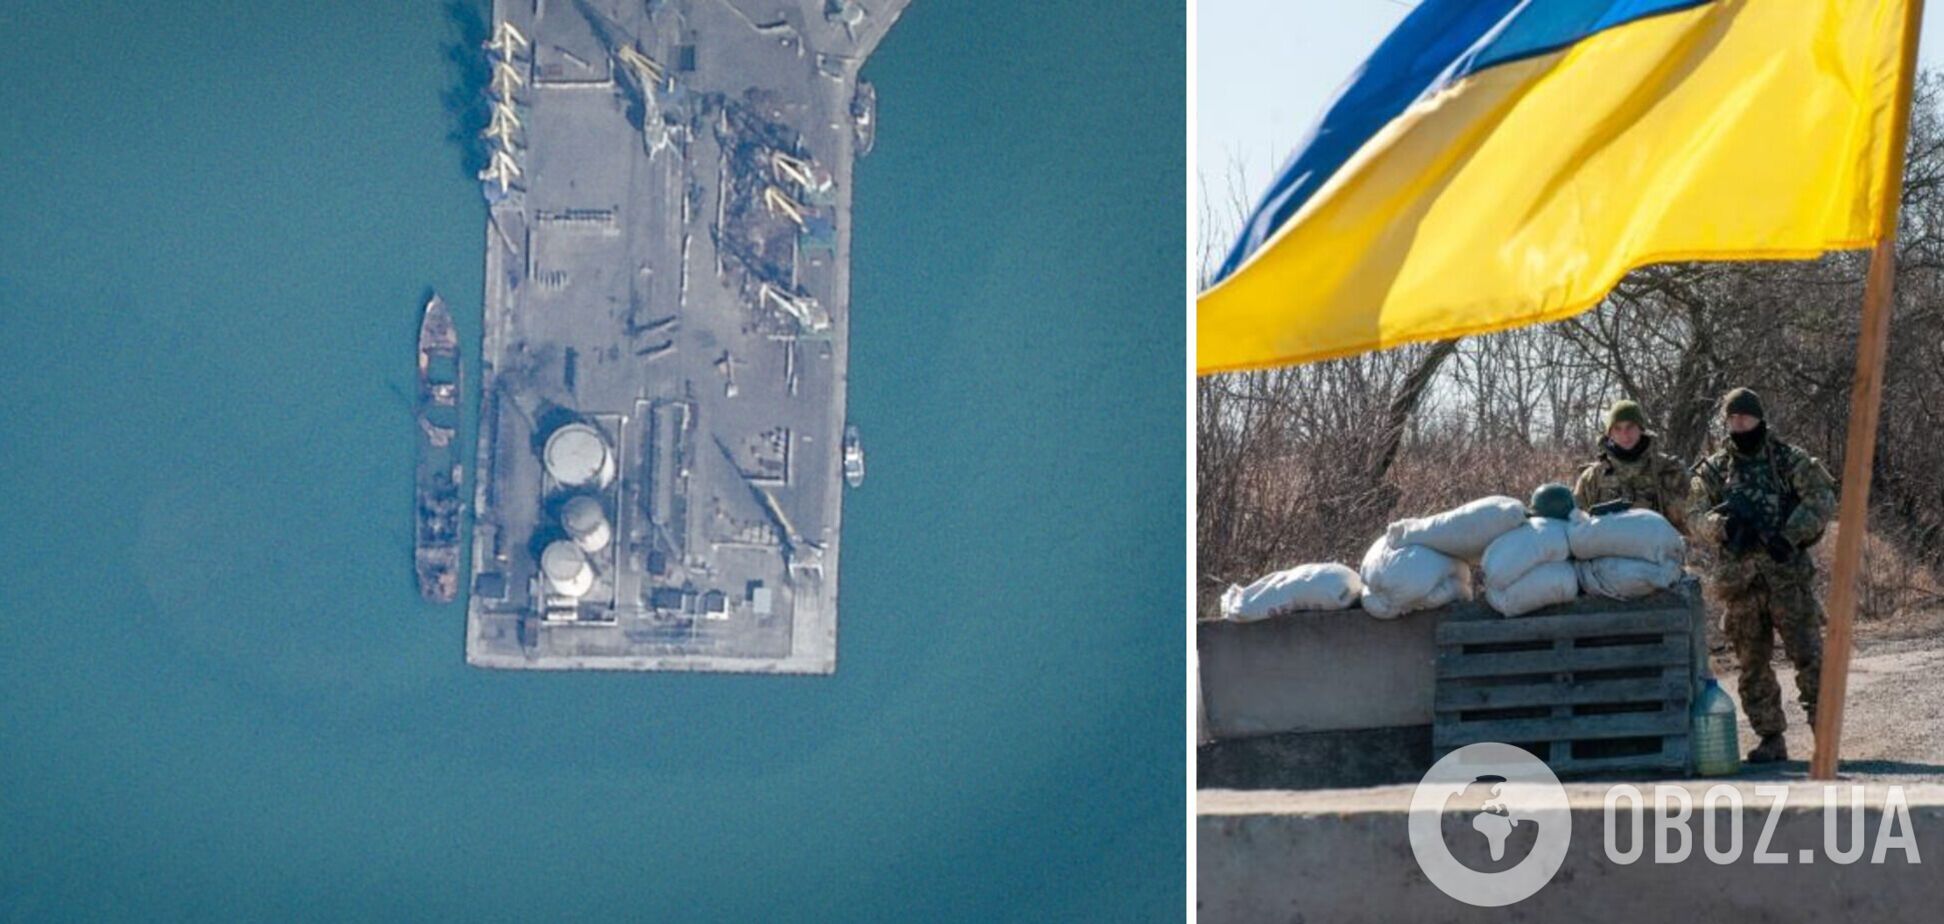 Как выглядит российский военный корабль 'Саратов', который 'ушел на***' в Бердянске: спутниковое фото